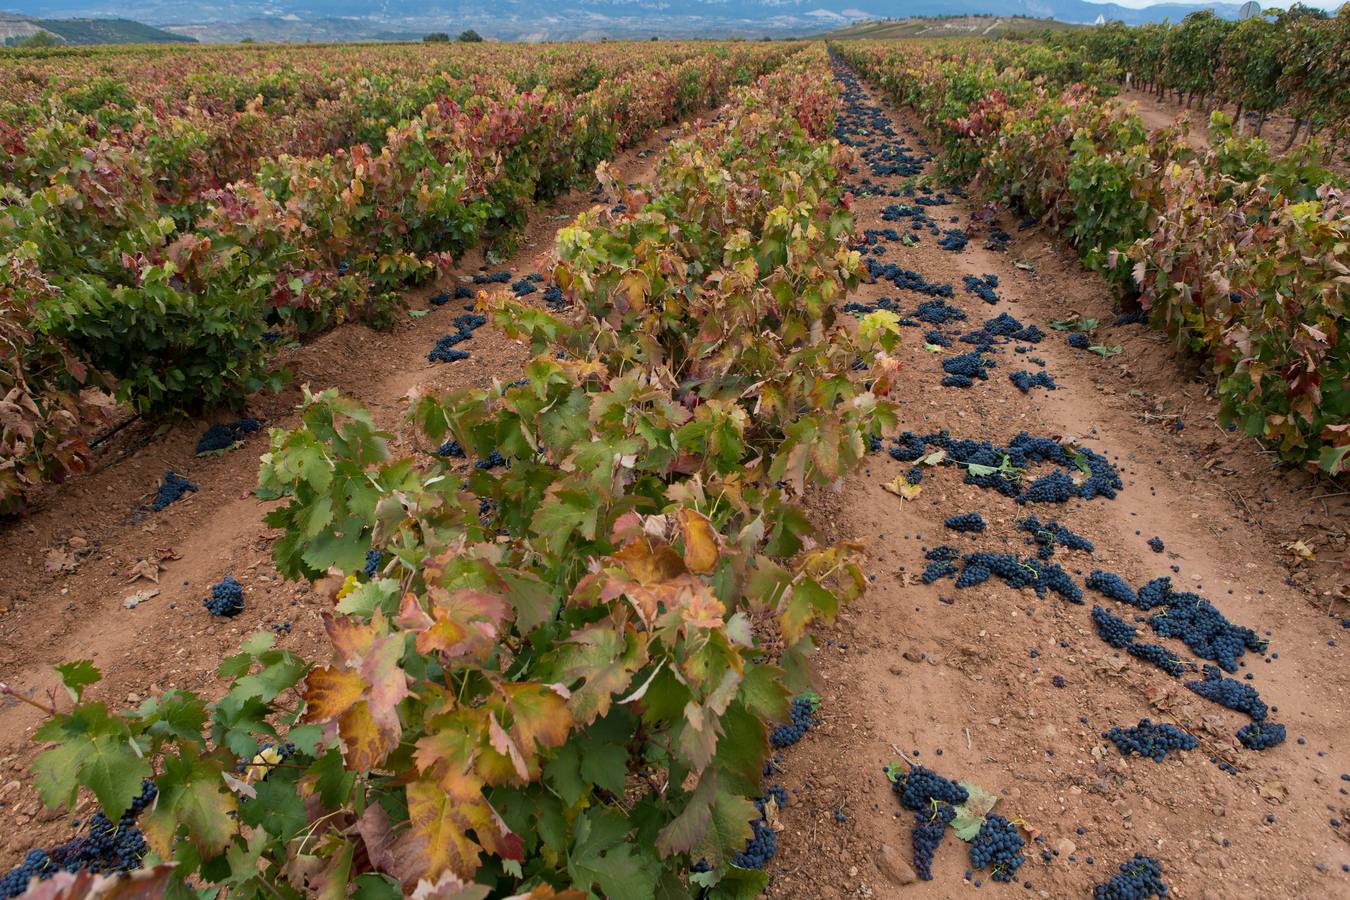 Millones de kilos de uva, al suelo